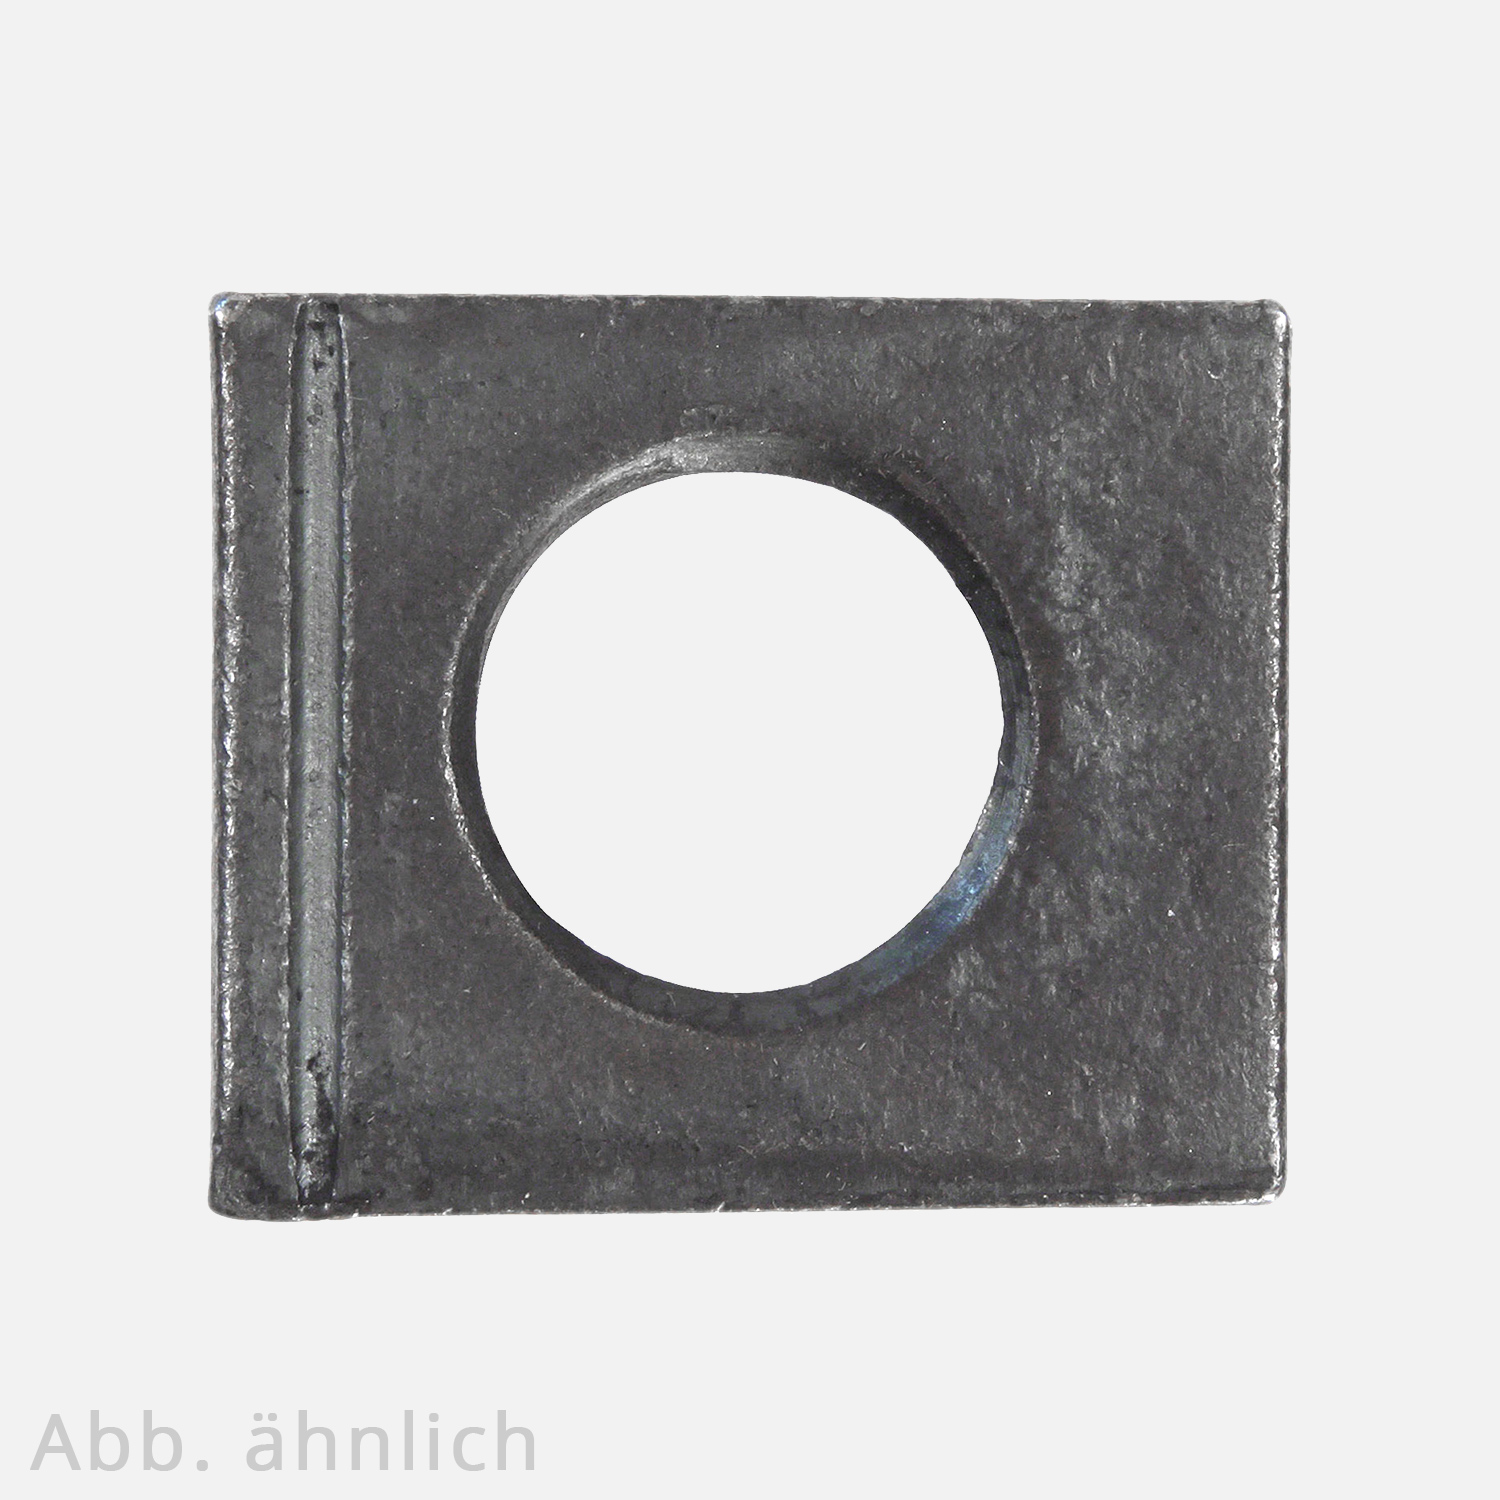 1 Vierkantscheibe - keilförmig 14% - 13 mm - DIN 6917 - Stahl vergütet